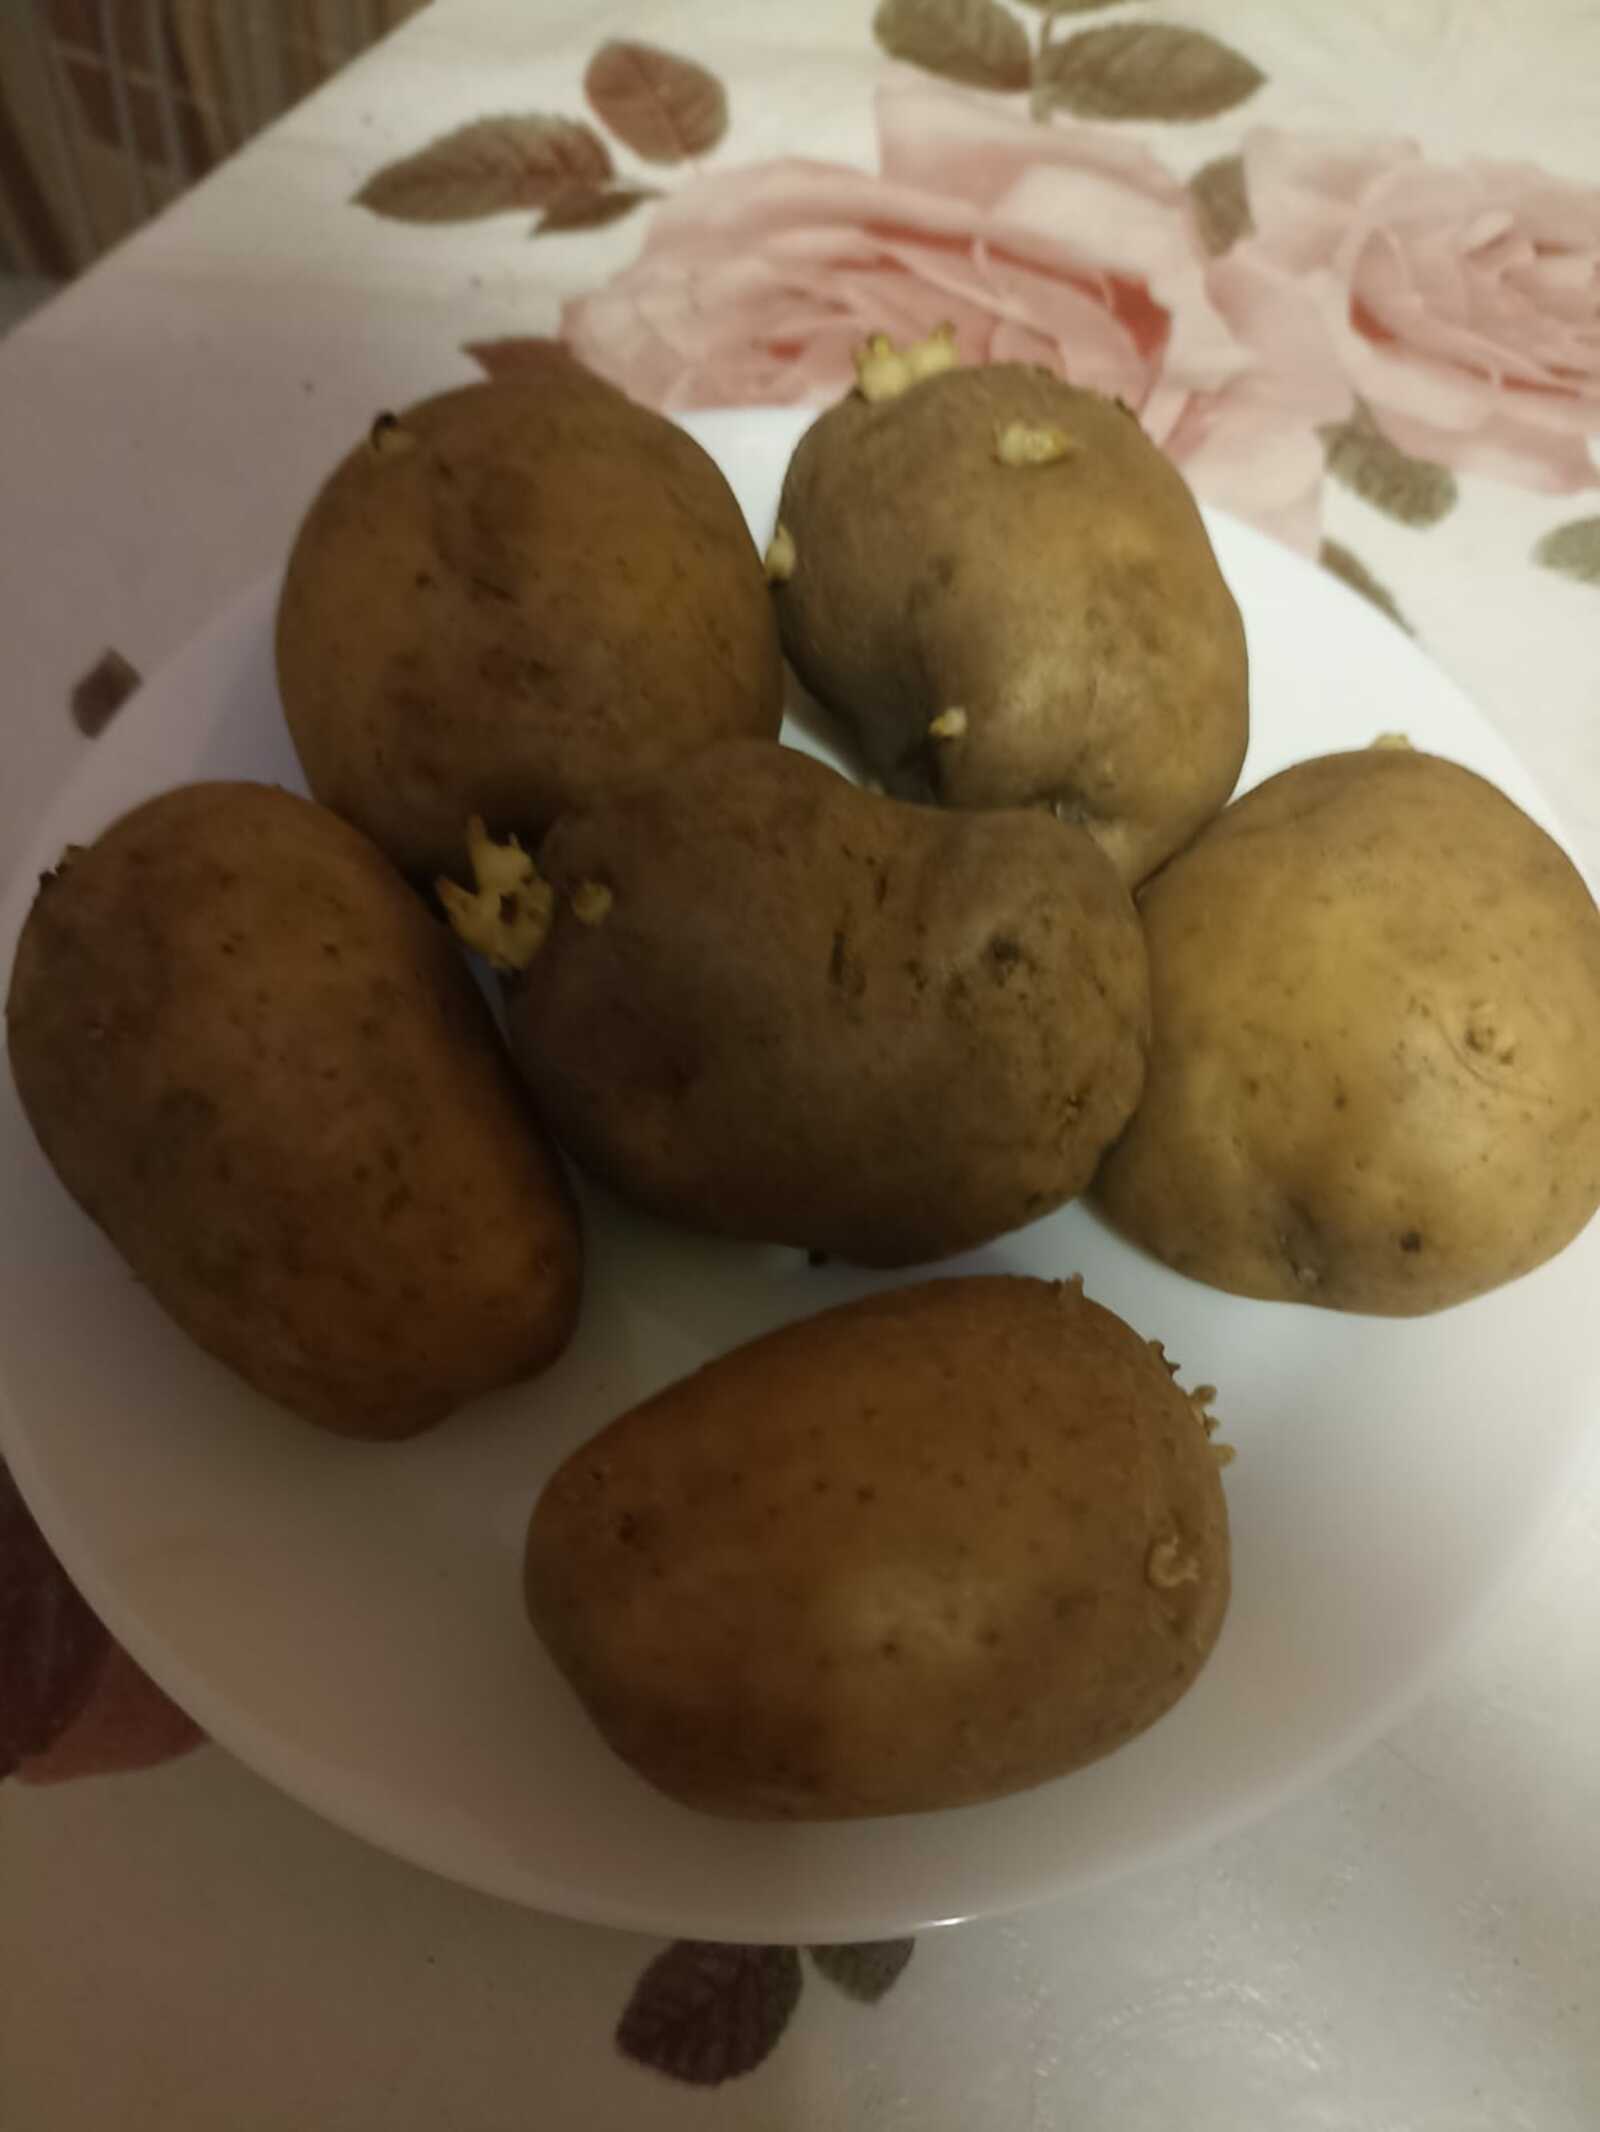 Сажать картошку собирается каждый четвертый житель Башкирии